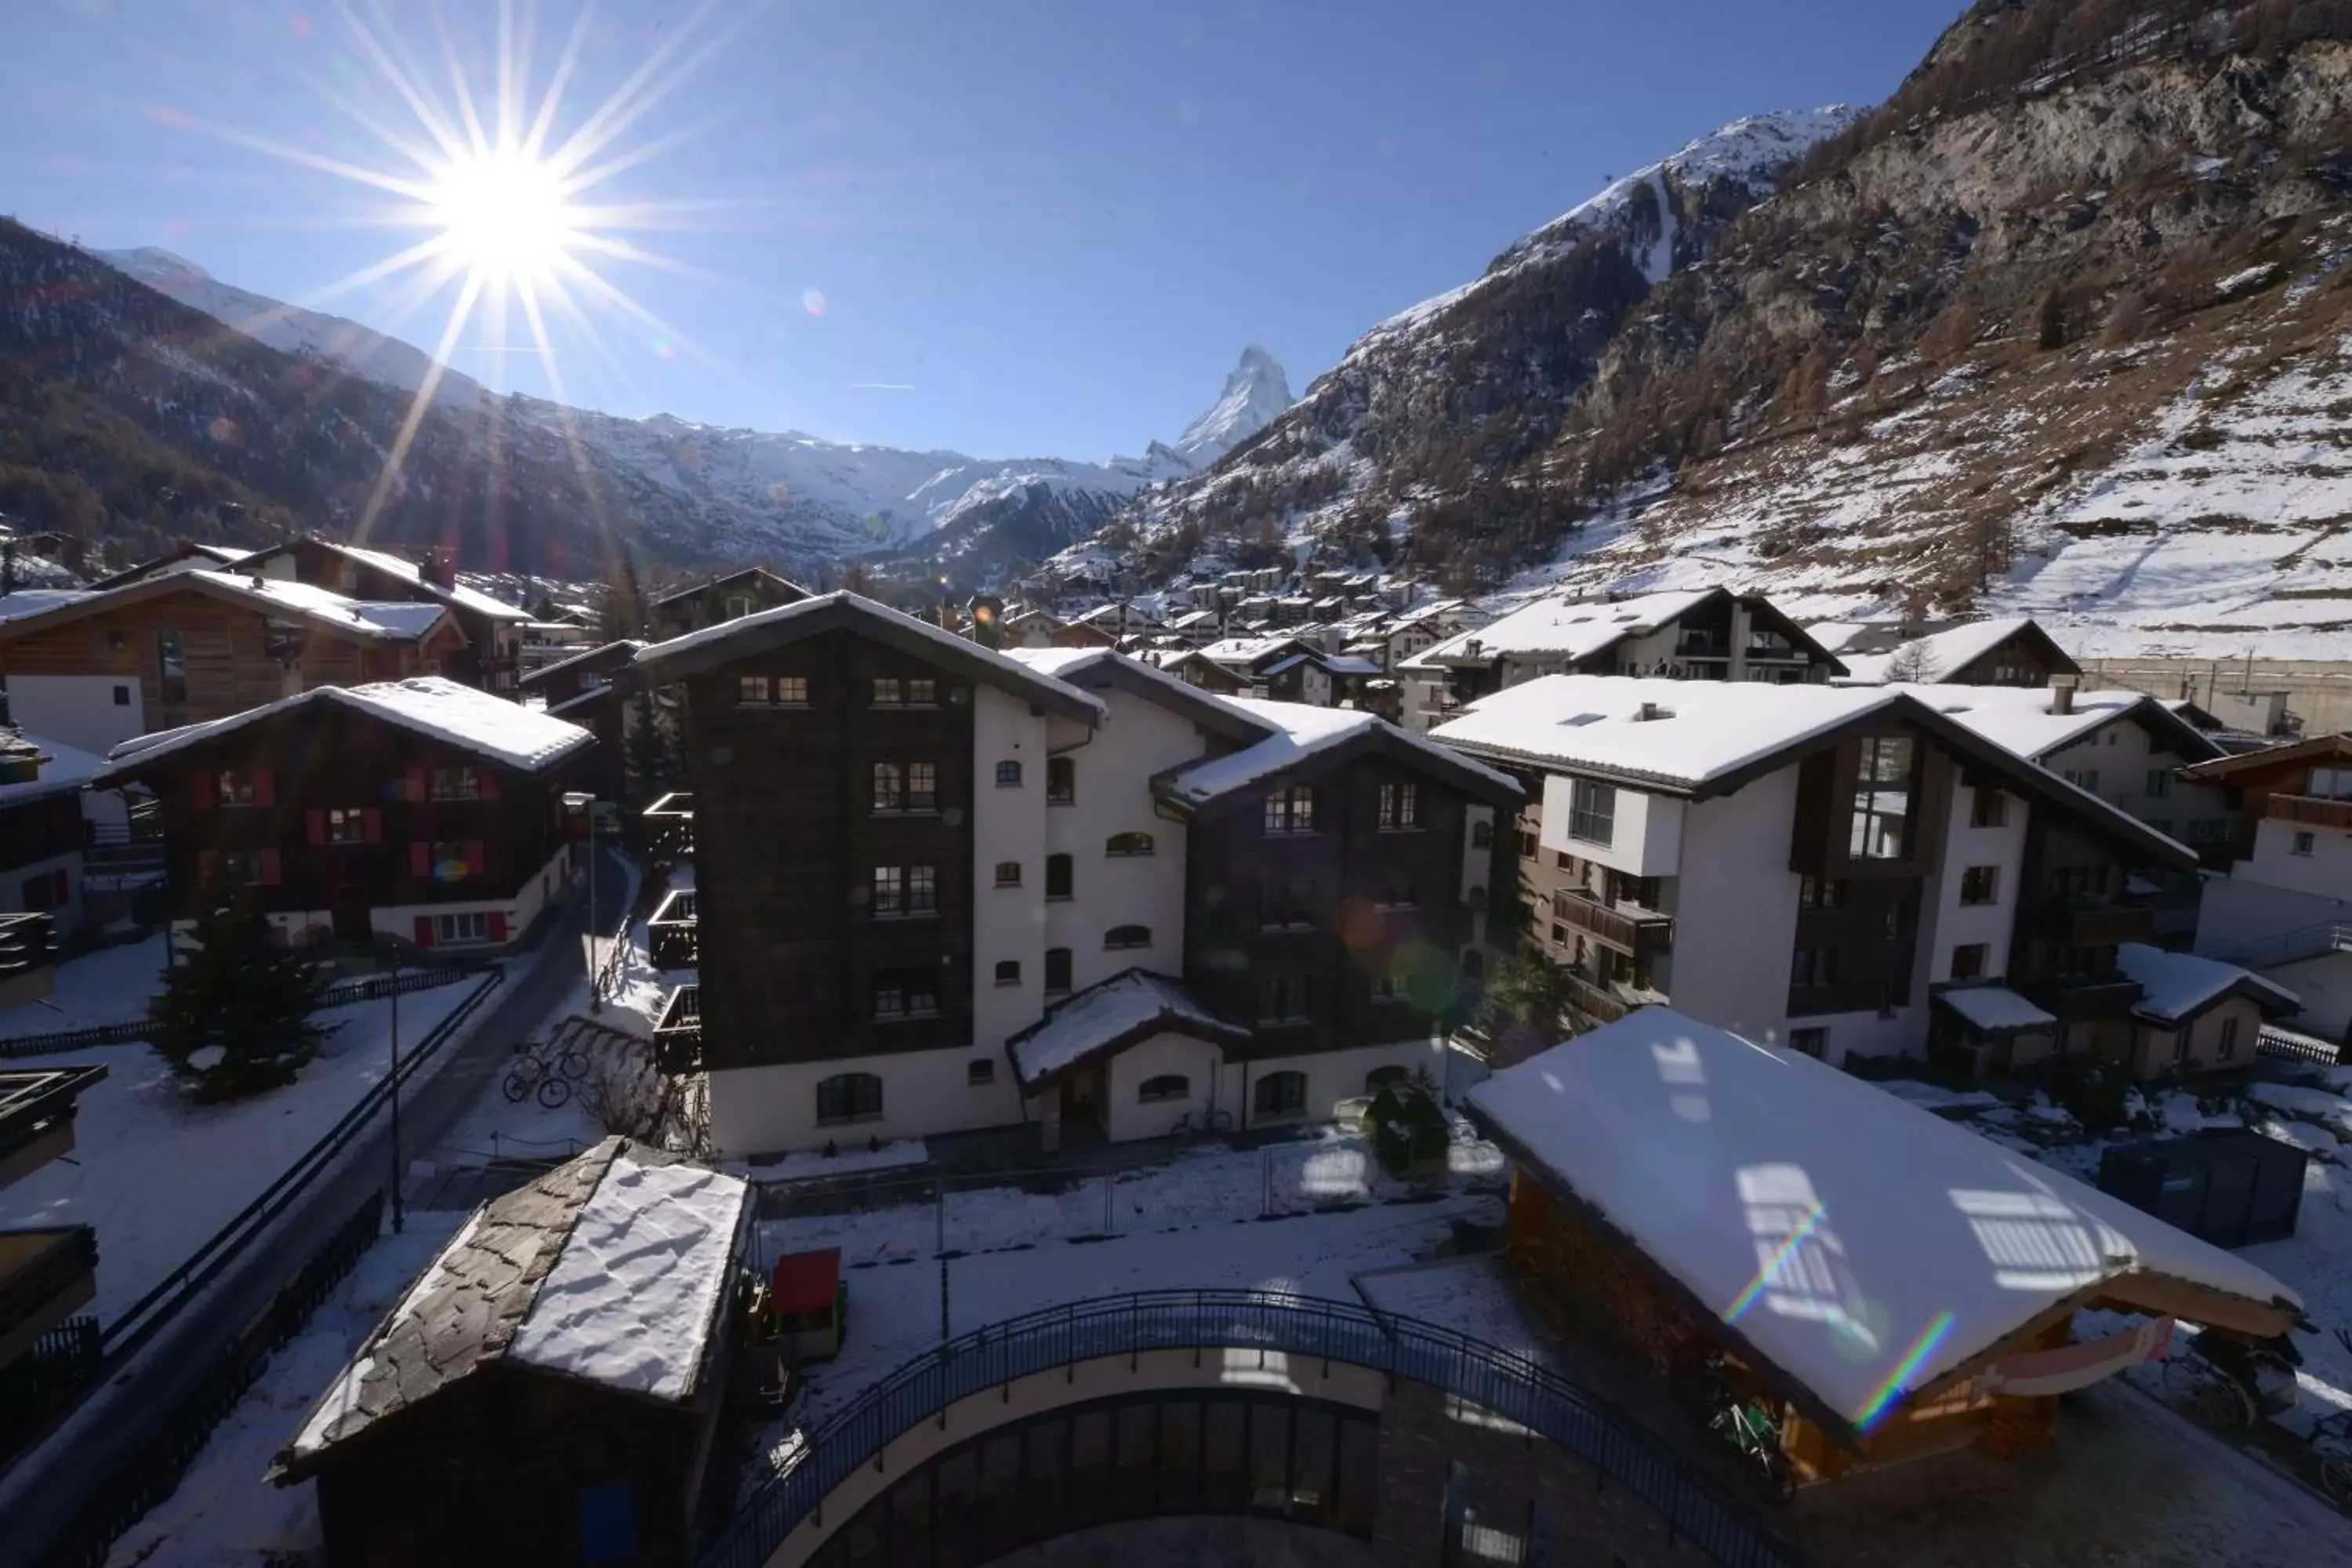 Day, Winter in Alpenhotel Fleurs de Zermatt